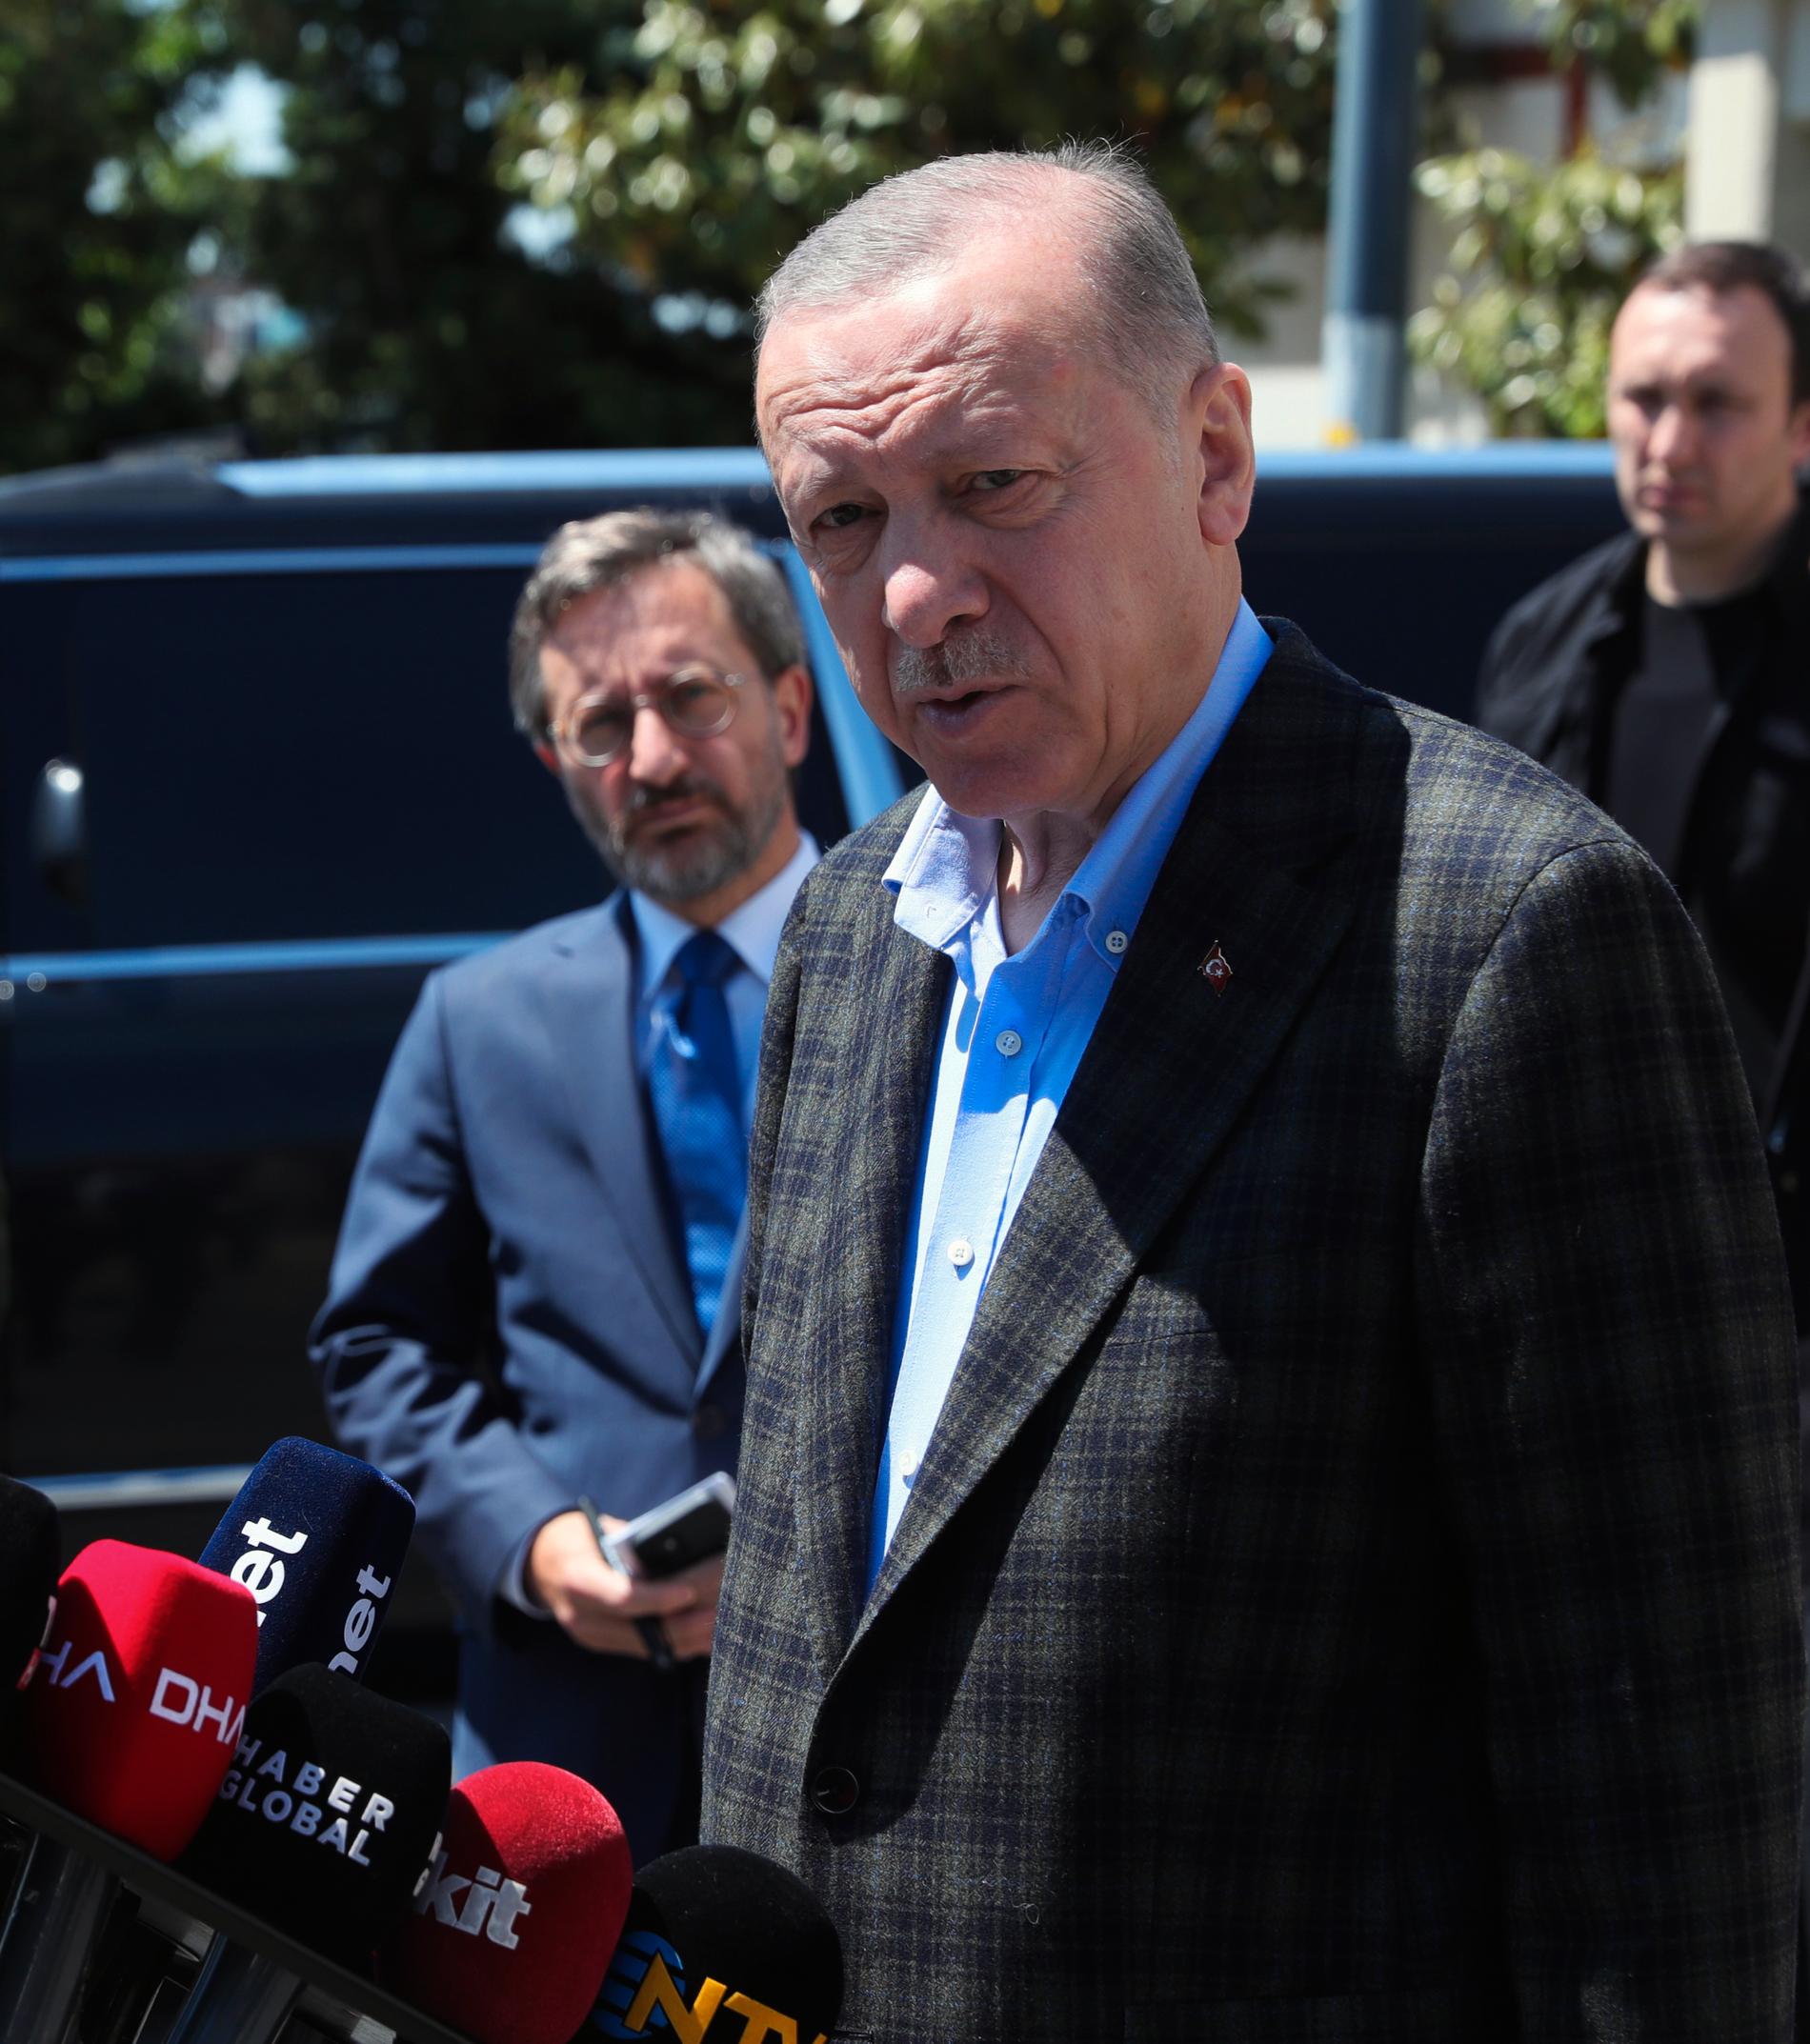  Turkiets president Erdogan svarade på frågor från journalister efter fredagens bön i Istanbul. Han uttryckte bland annat skepsis mot att Finland och Sverige går med i Nato.